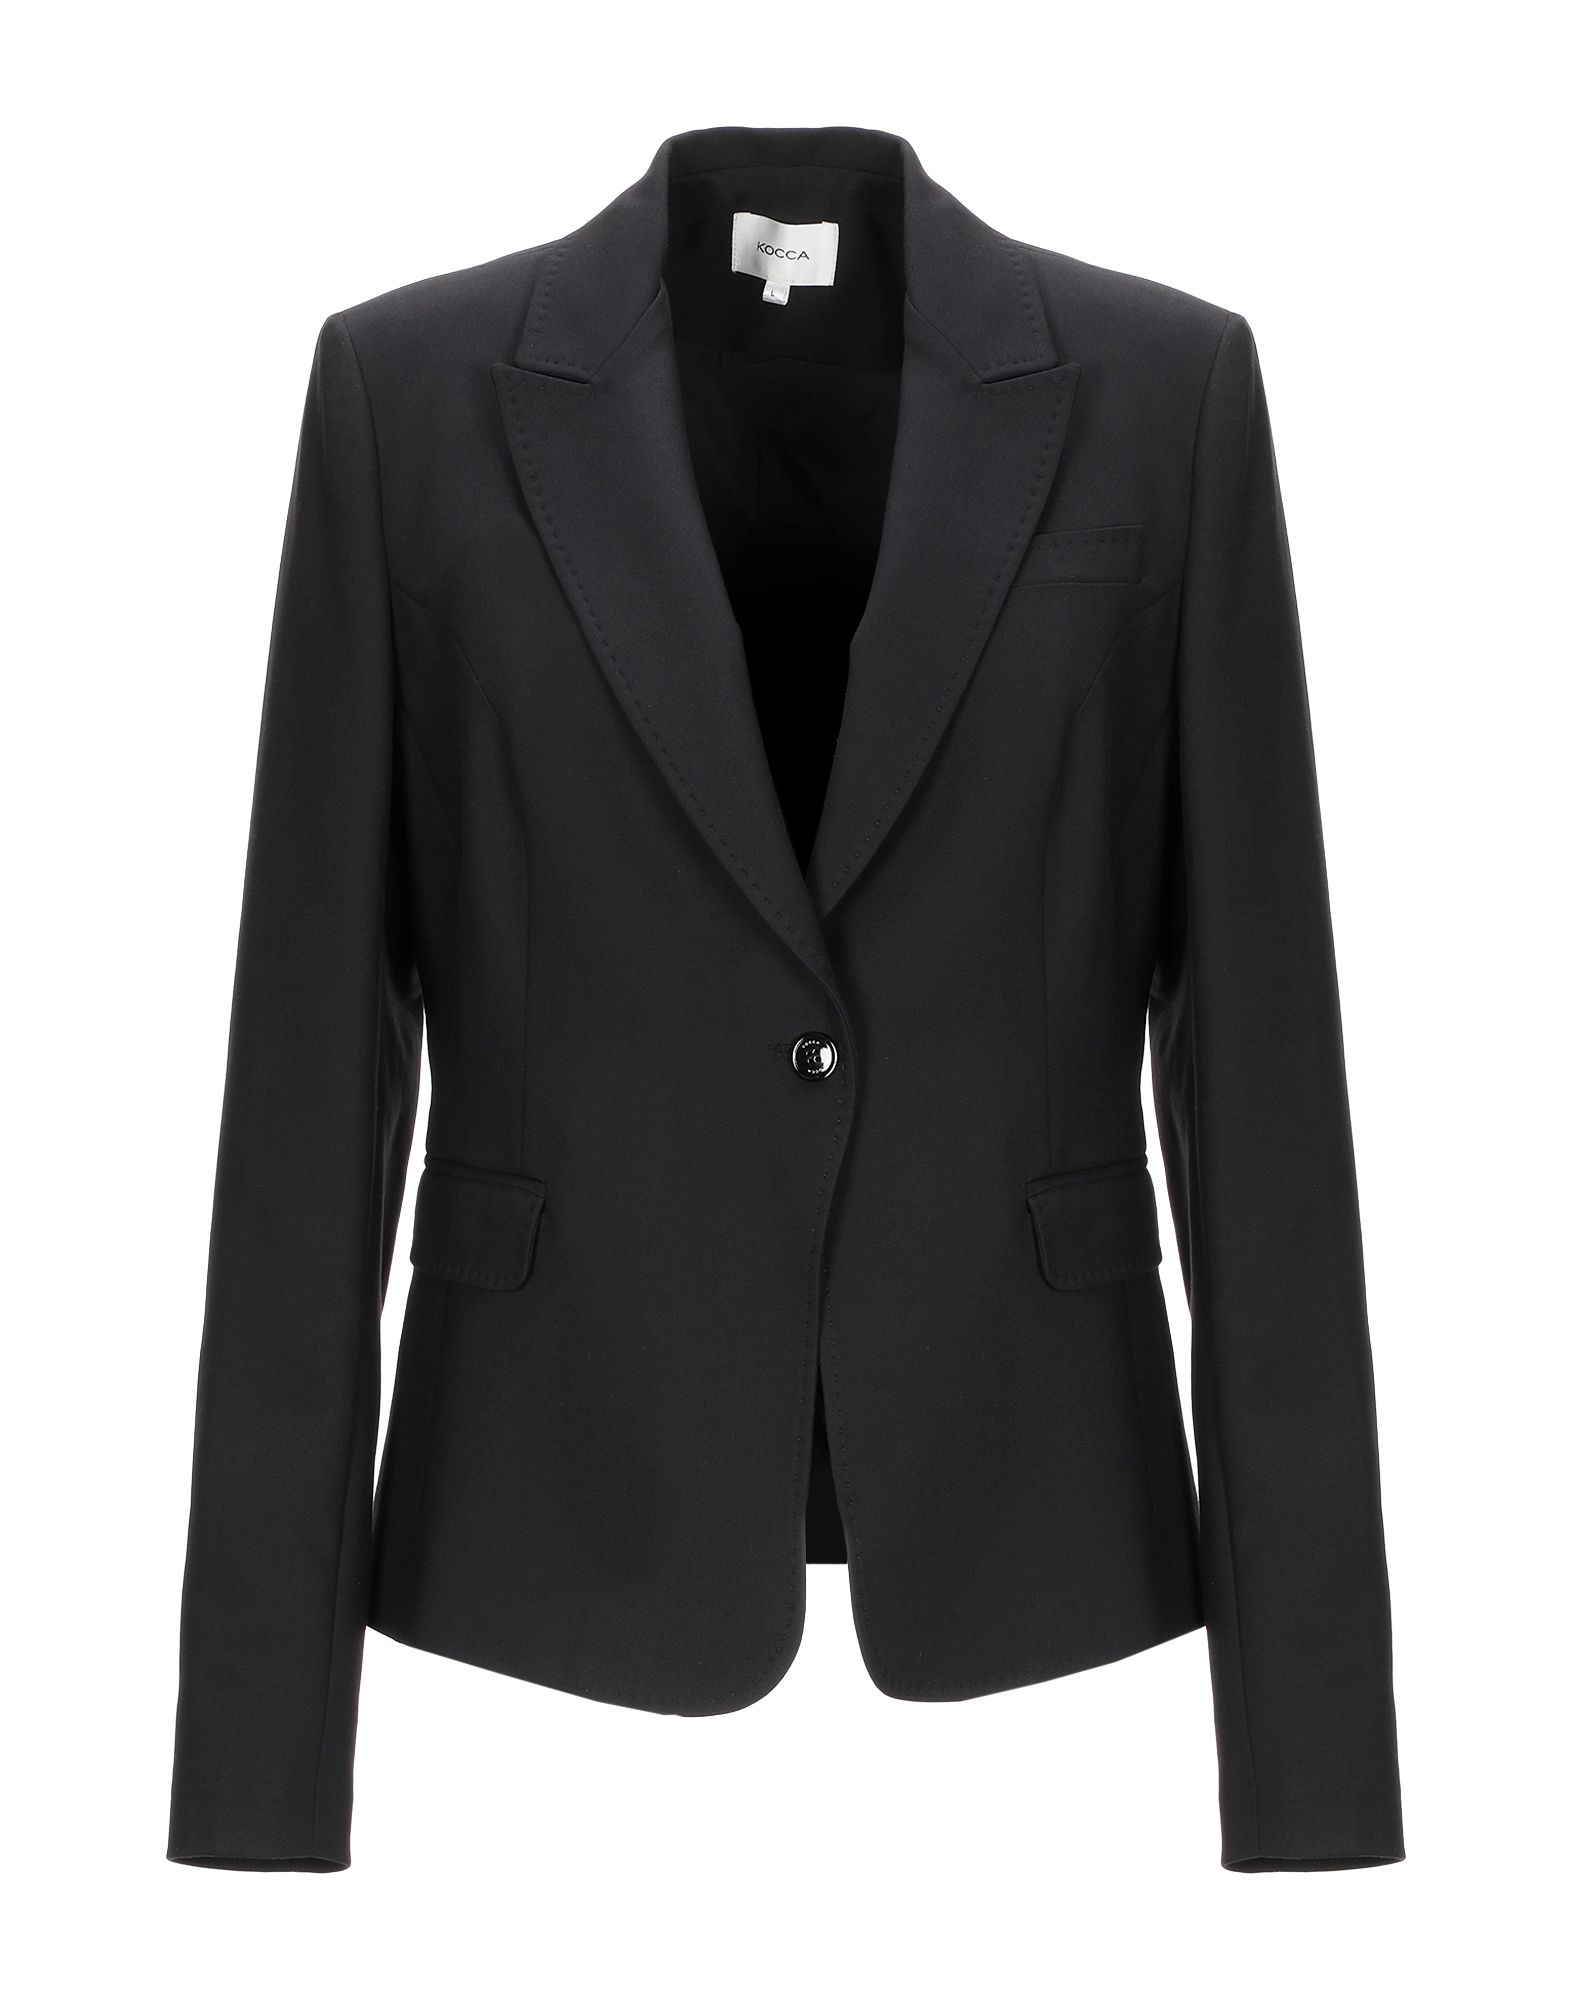 Kocca Suit Jackets In Black